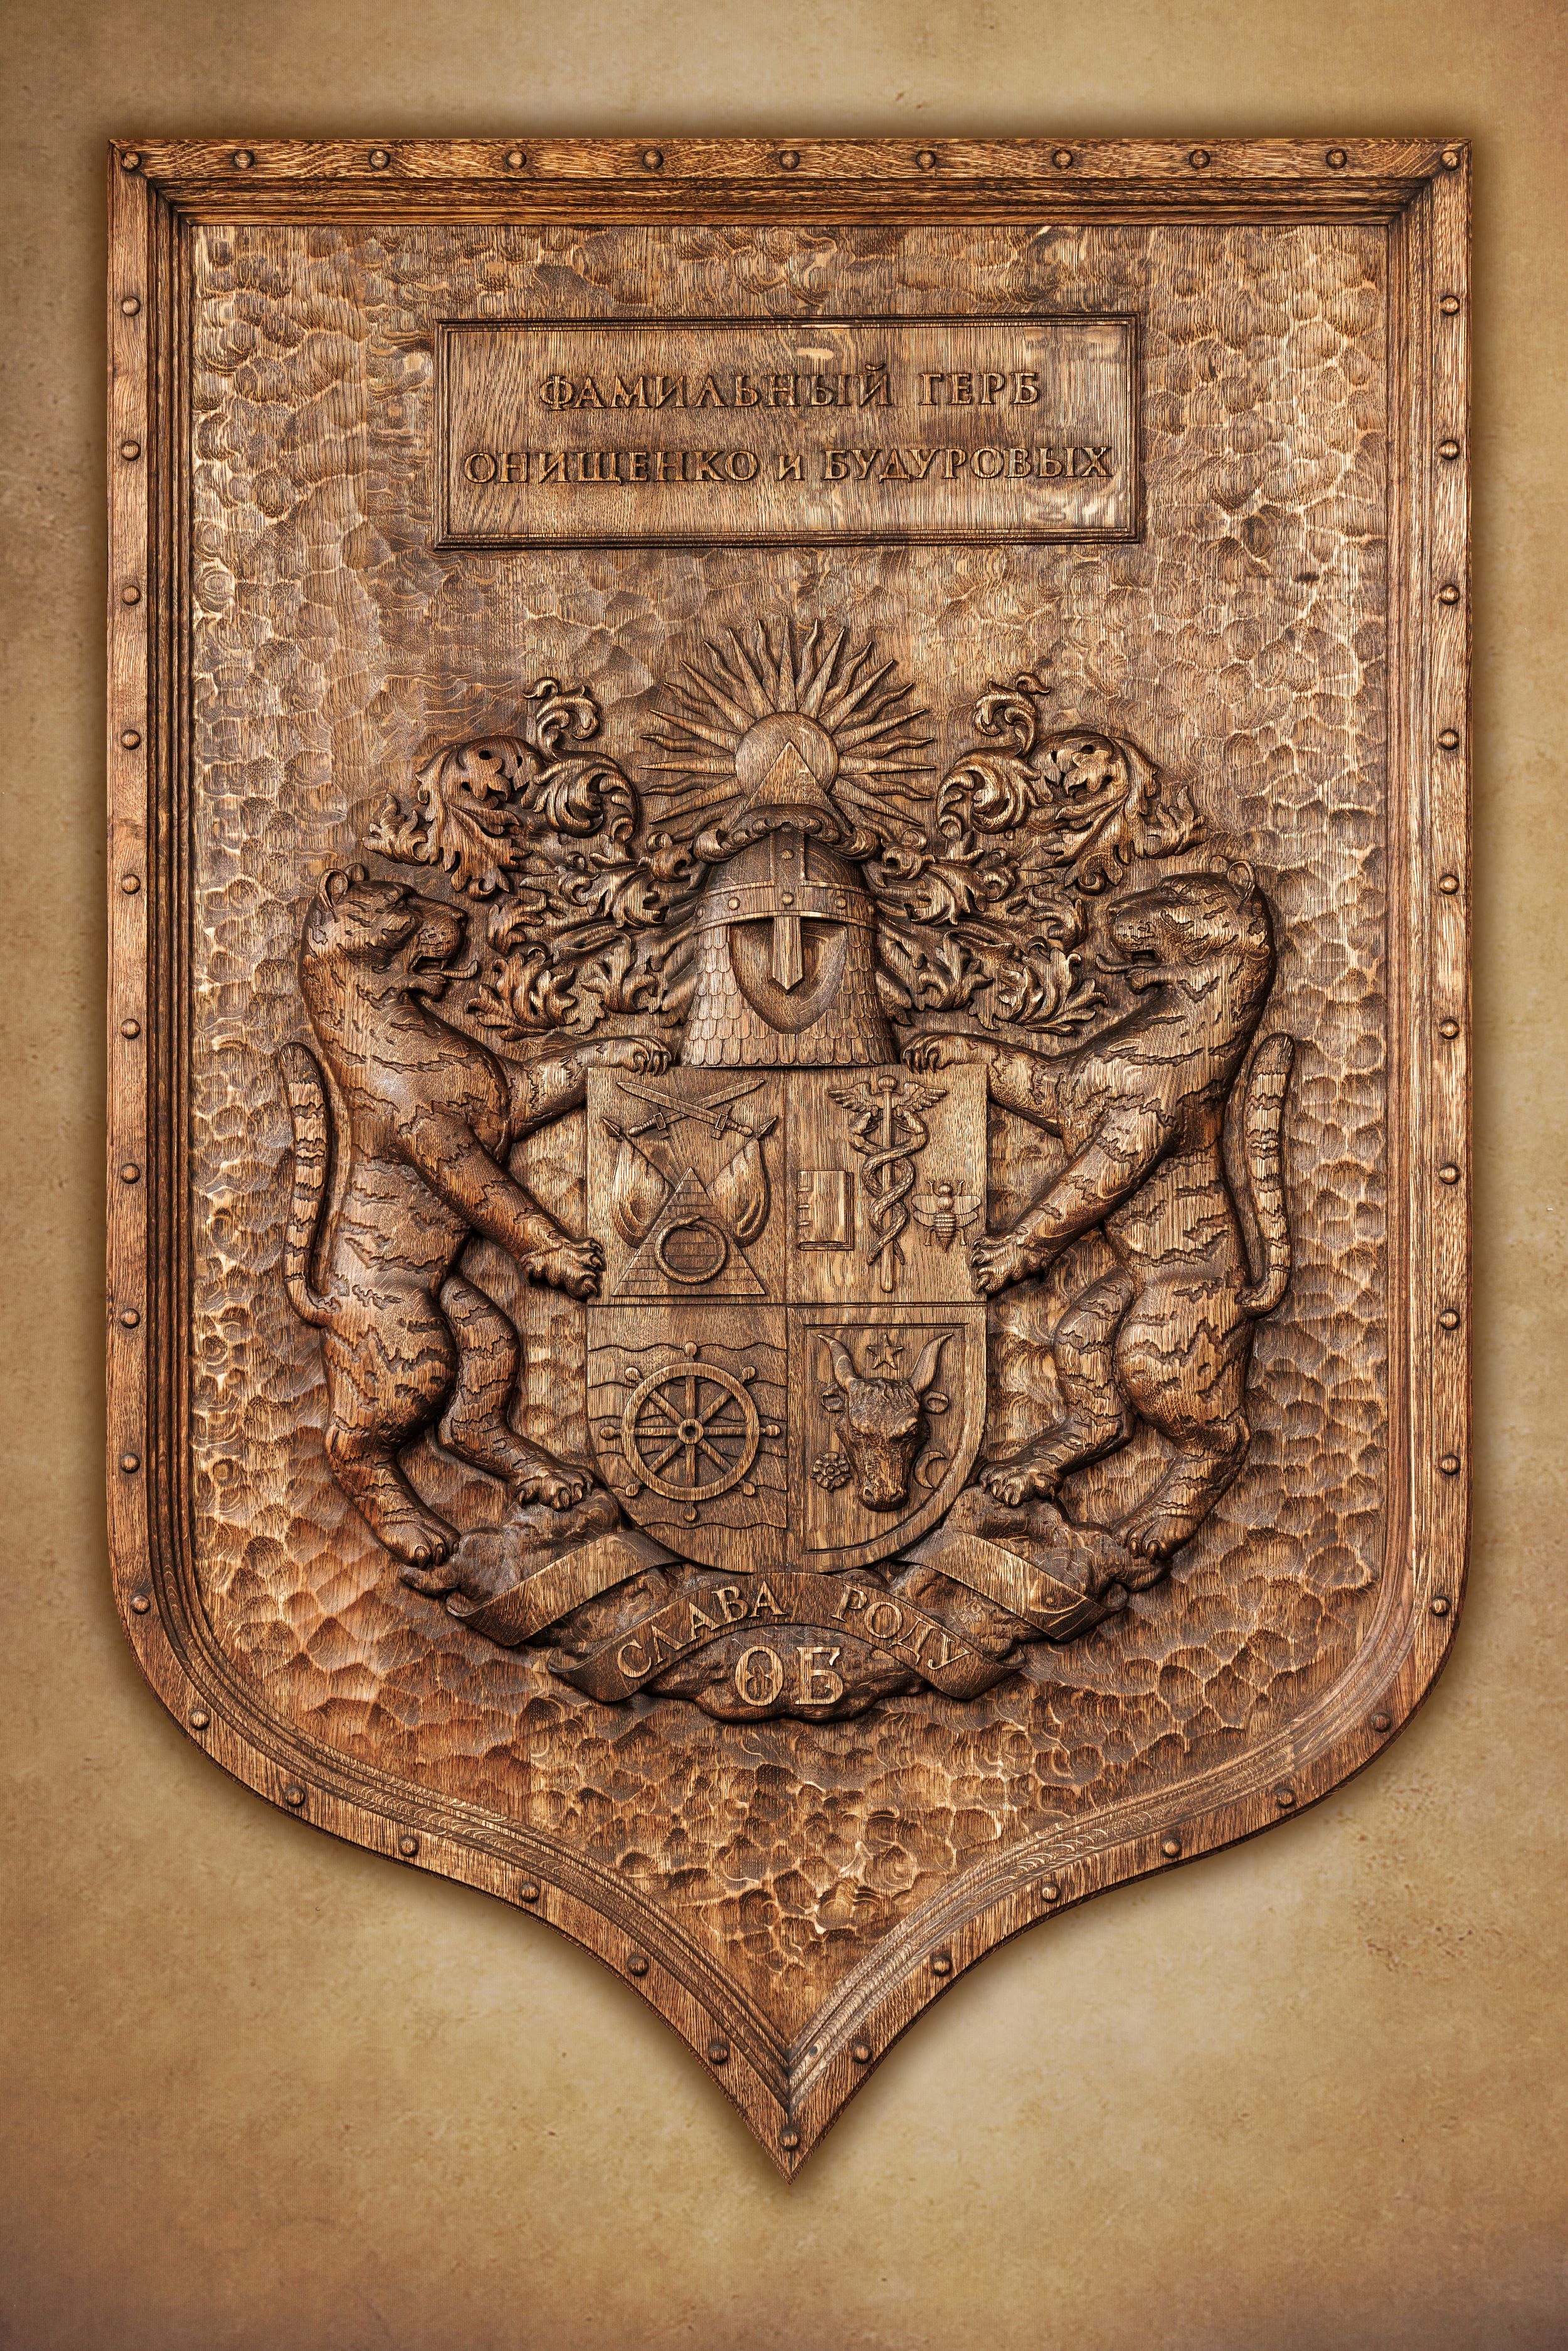 Семейный герб Онищенко и Будуровых